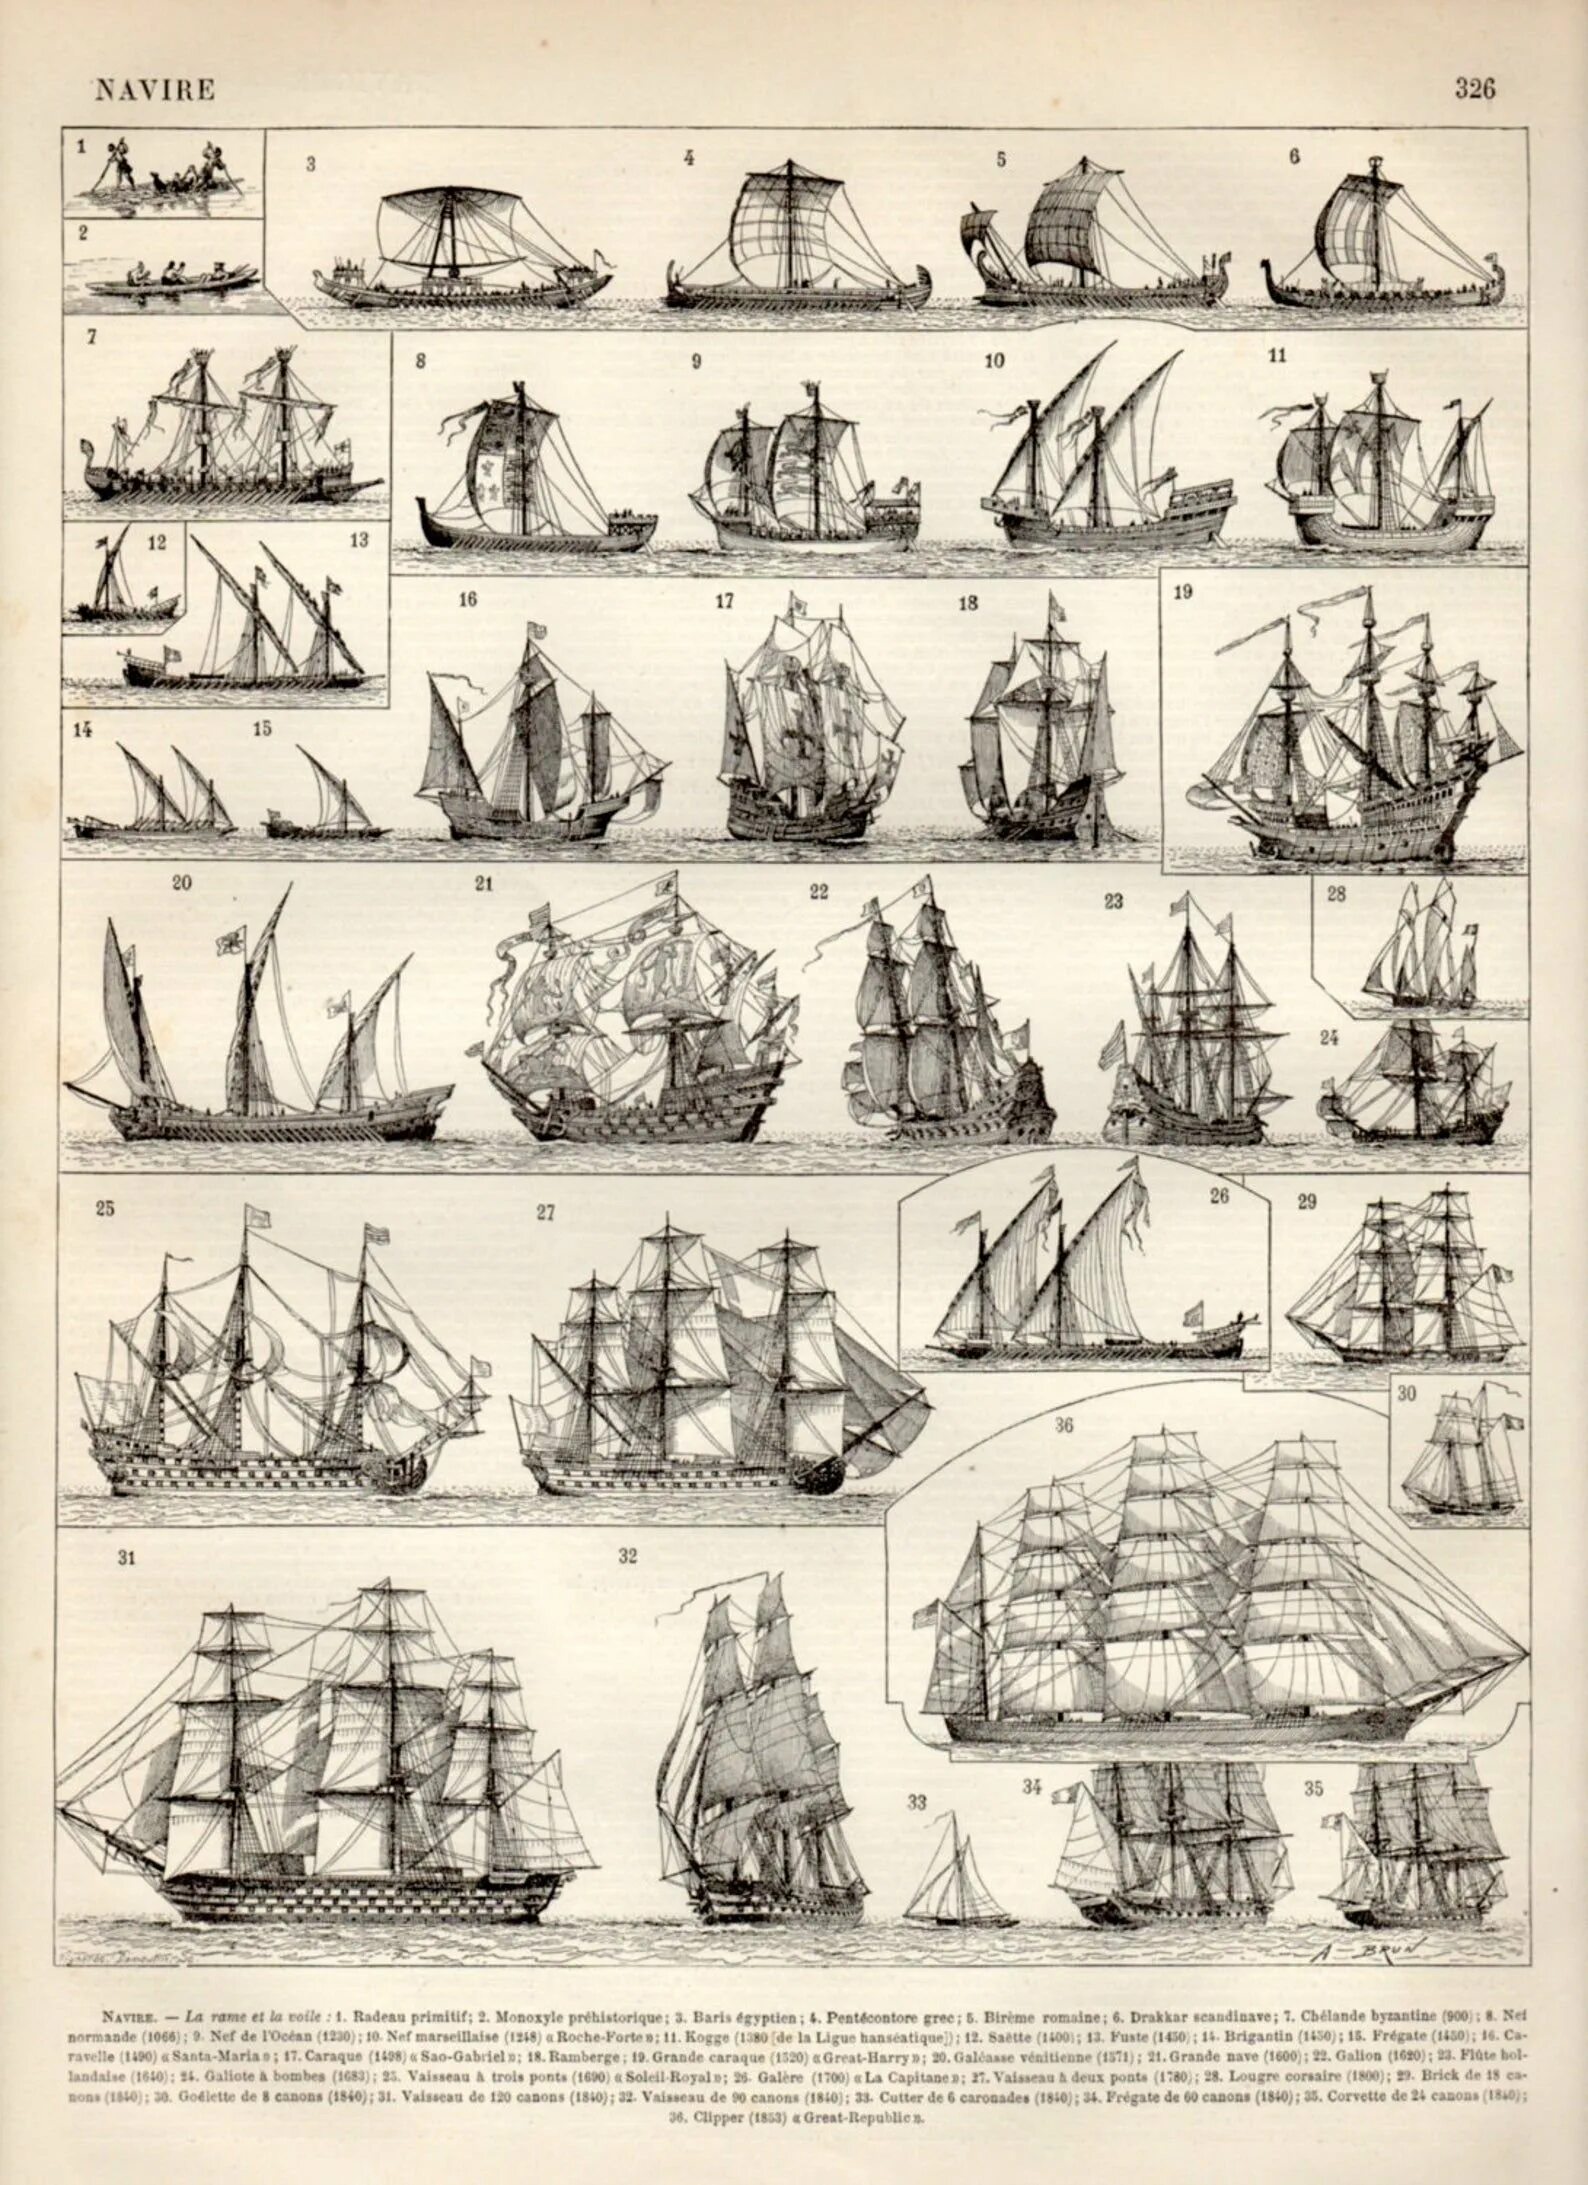 Тип парусного судна. Классификация парусных кораблей. Классификация военных парусных кораблей 18 века. Классификация парусных кораблей 16-18 века. Классификация парусных кораблей 18 века.